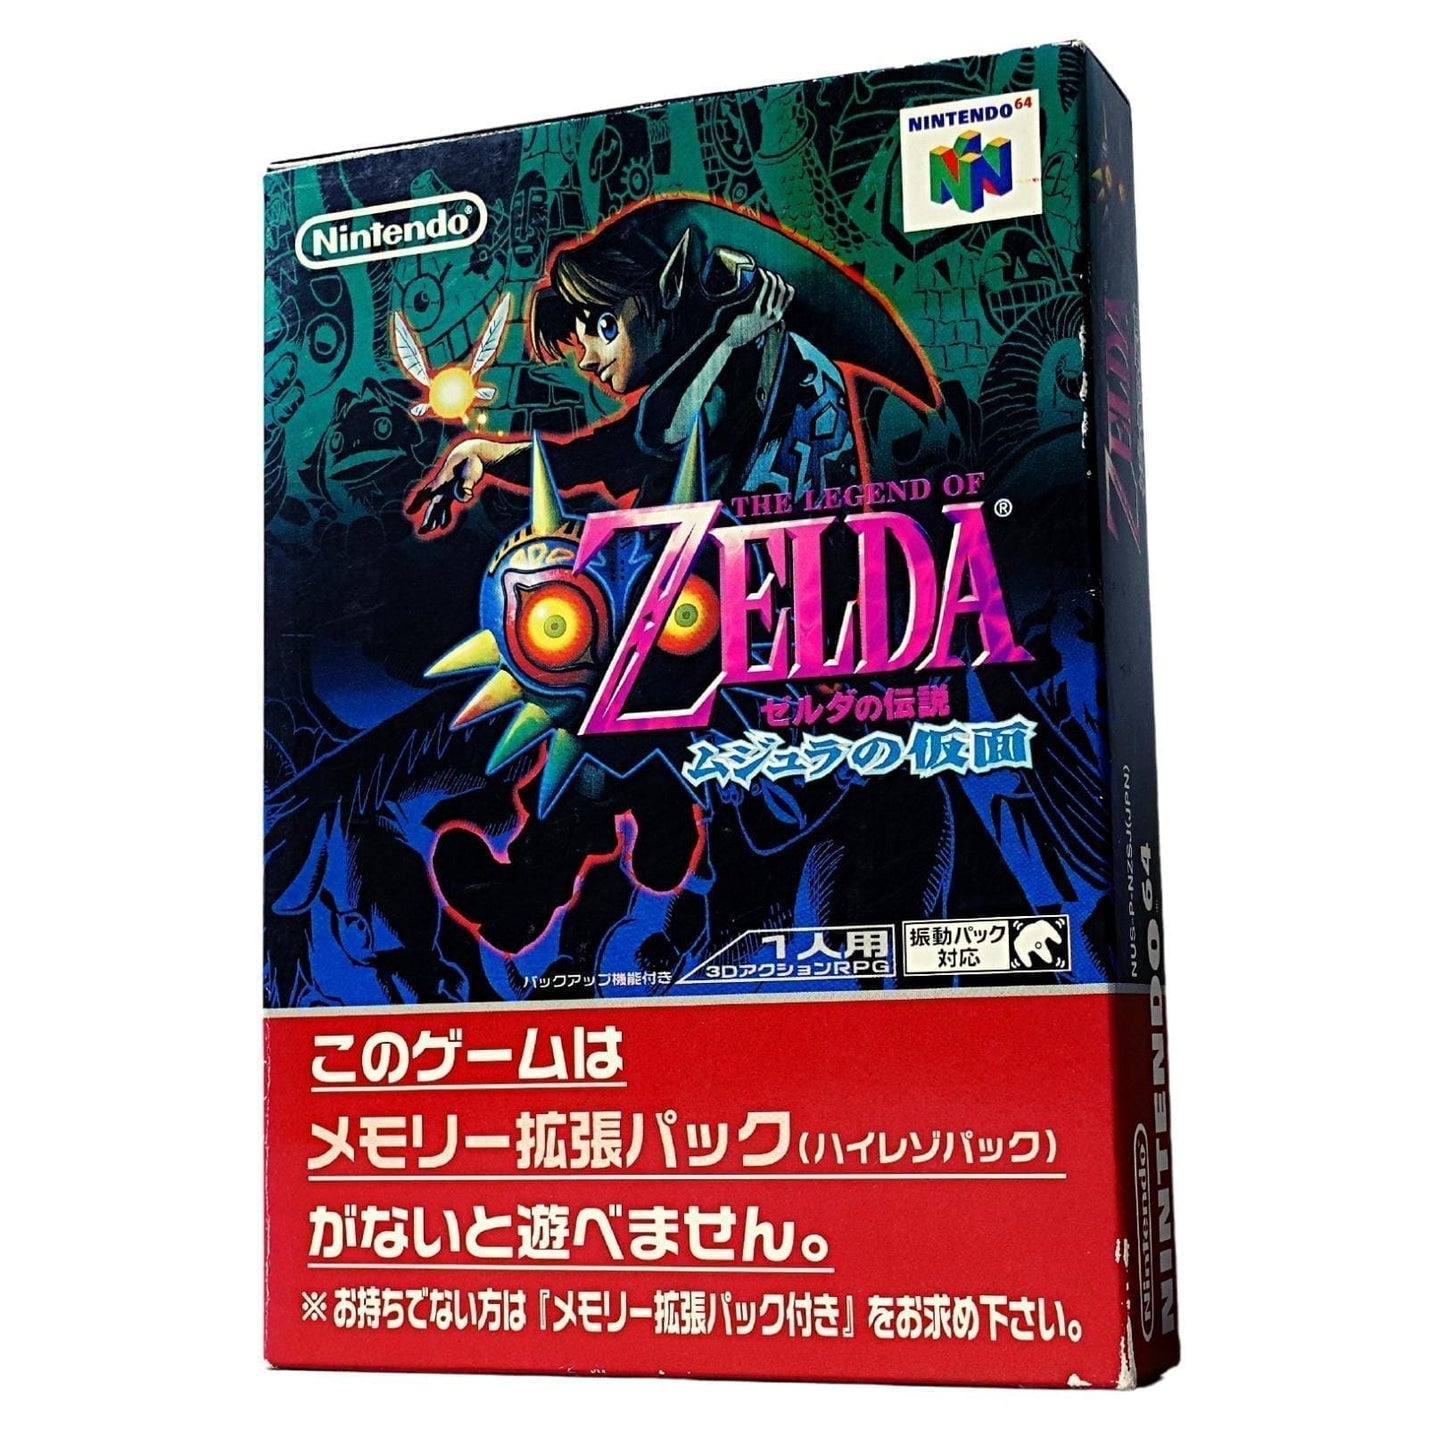 The Legend of Zelda: Majoras Maske | Nintendo64 ChitoroShop